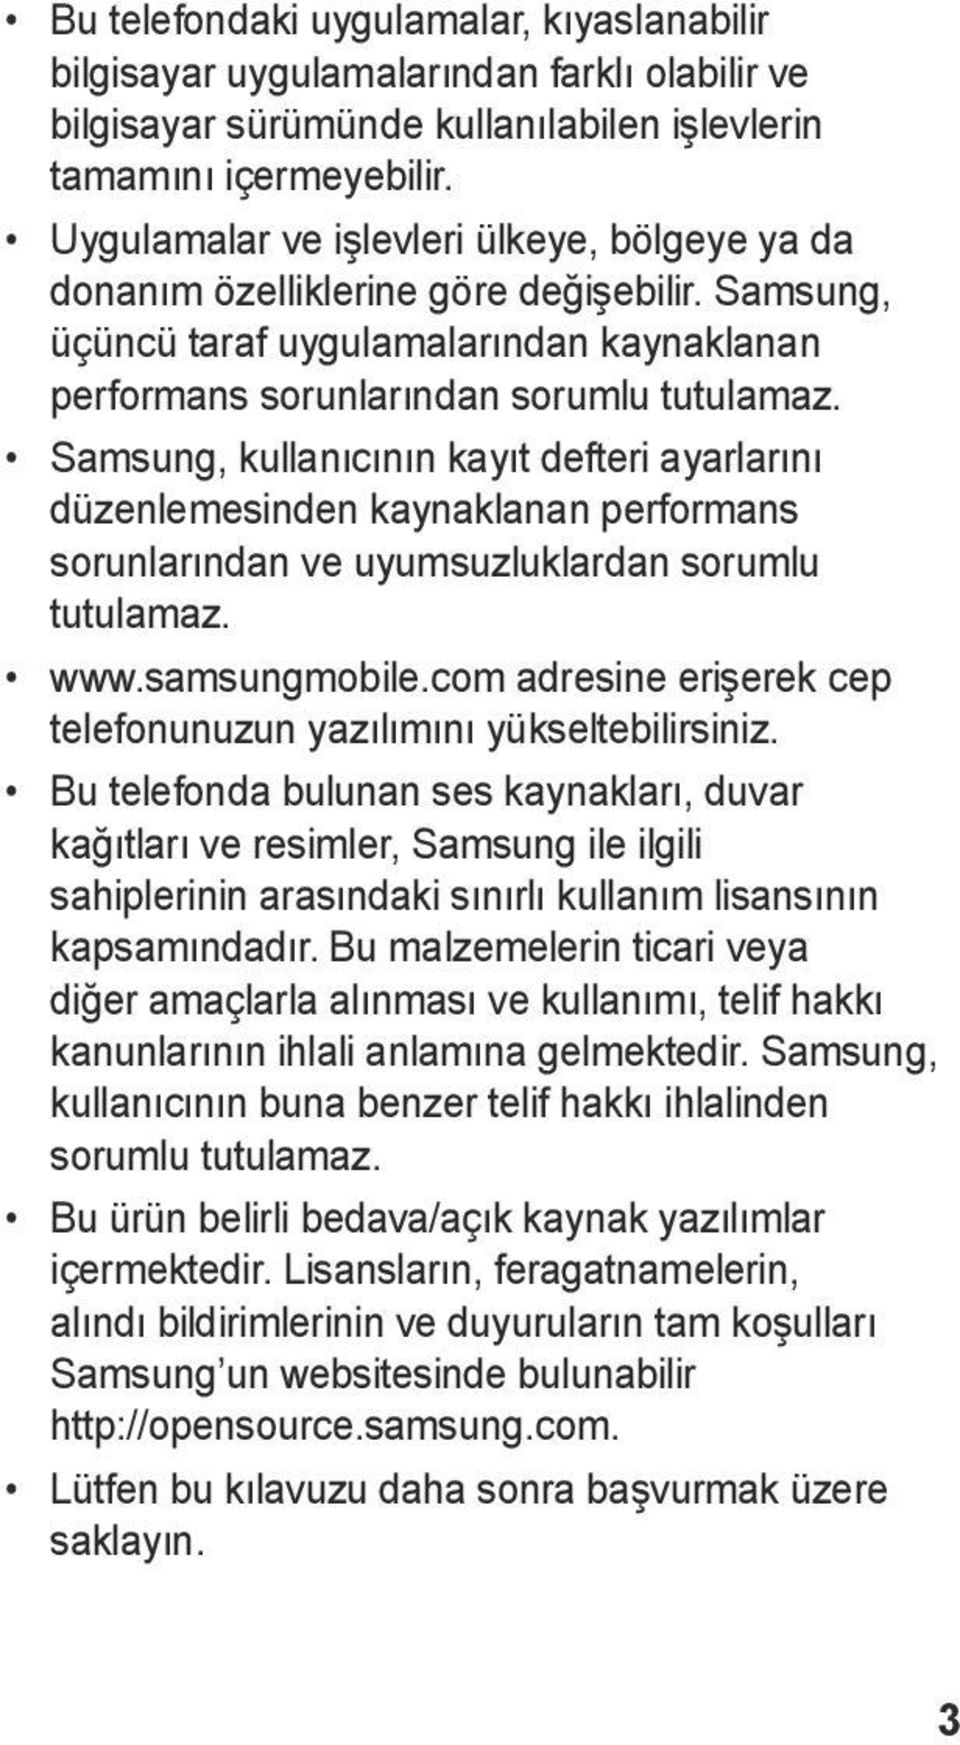 Samsung, kullanıcının kayıt defteri ayarlarını düzenlemesinden kaynaklanan performans sorunlarından ve uyumsuzluklardan sorumlu tutulamaz. www.samsungmobile.